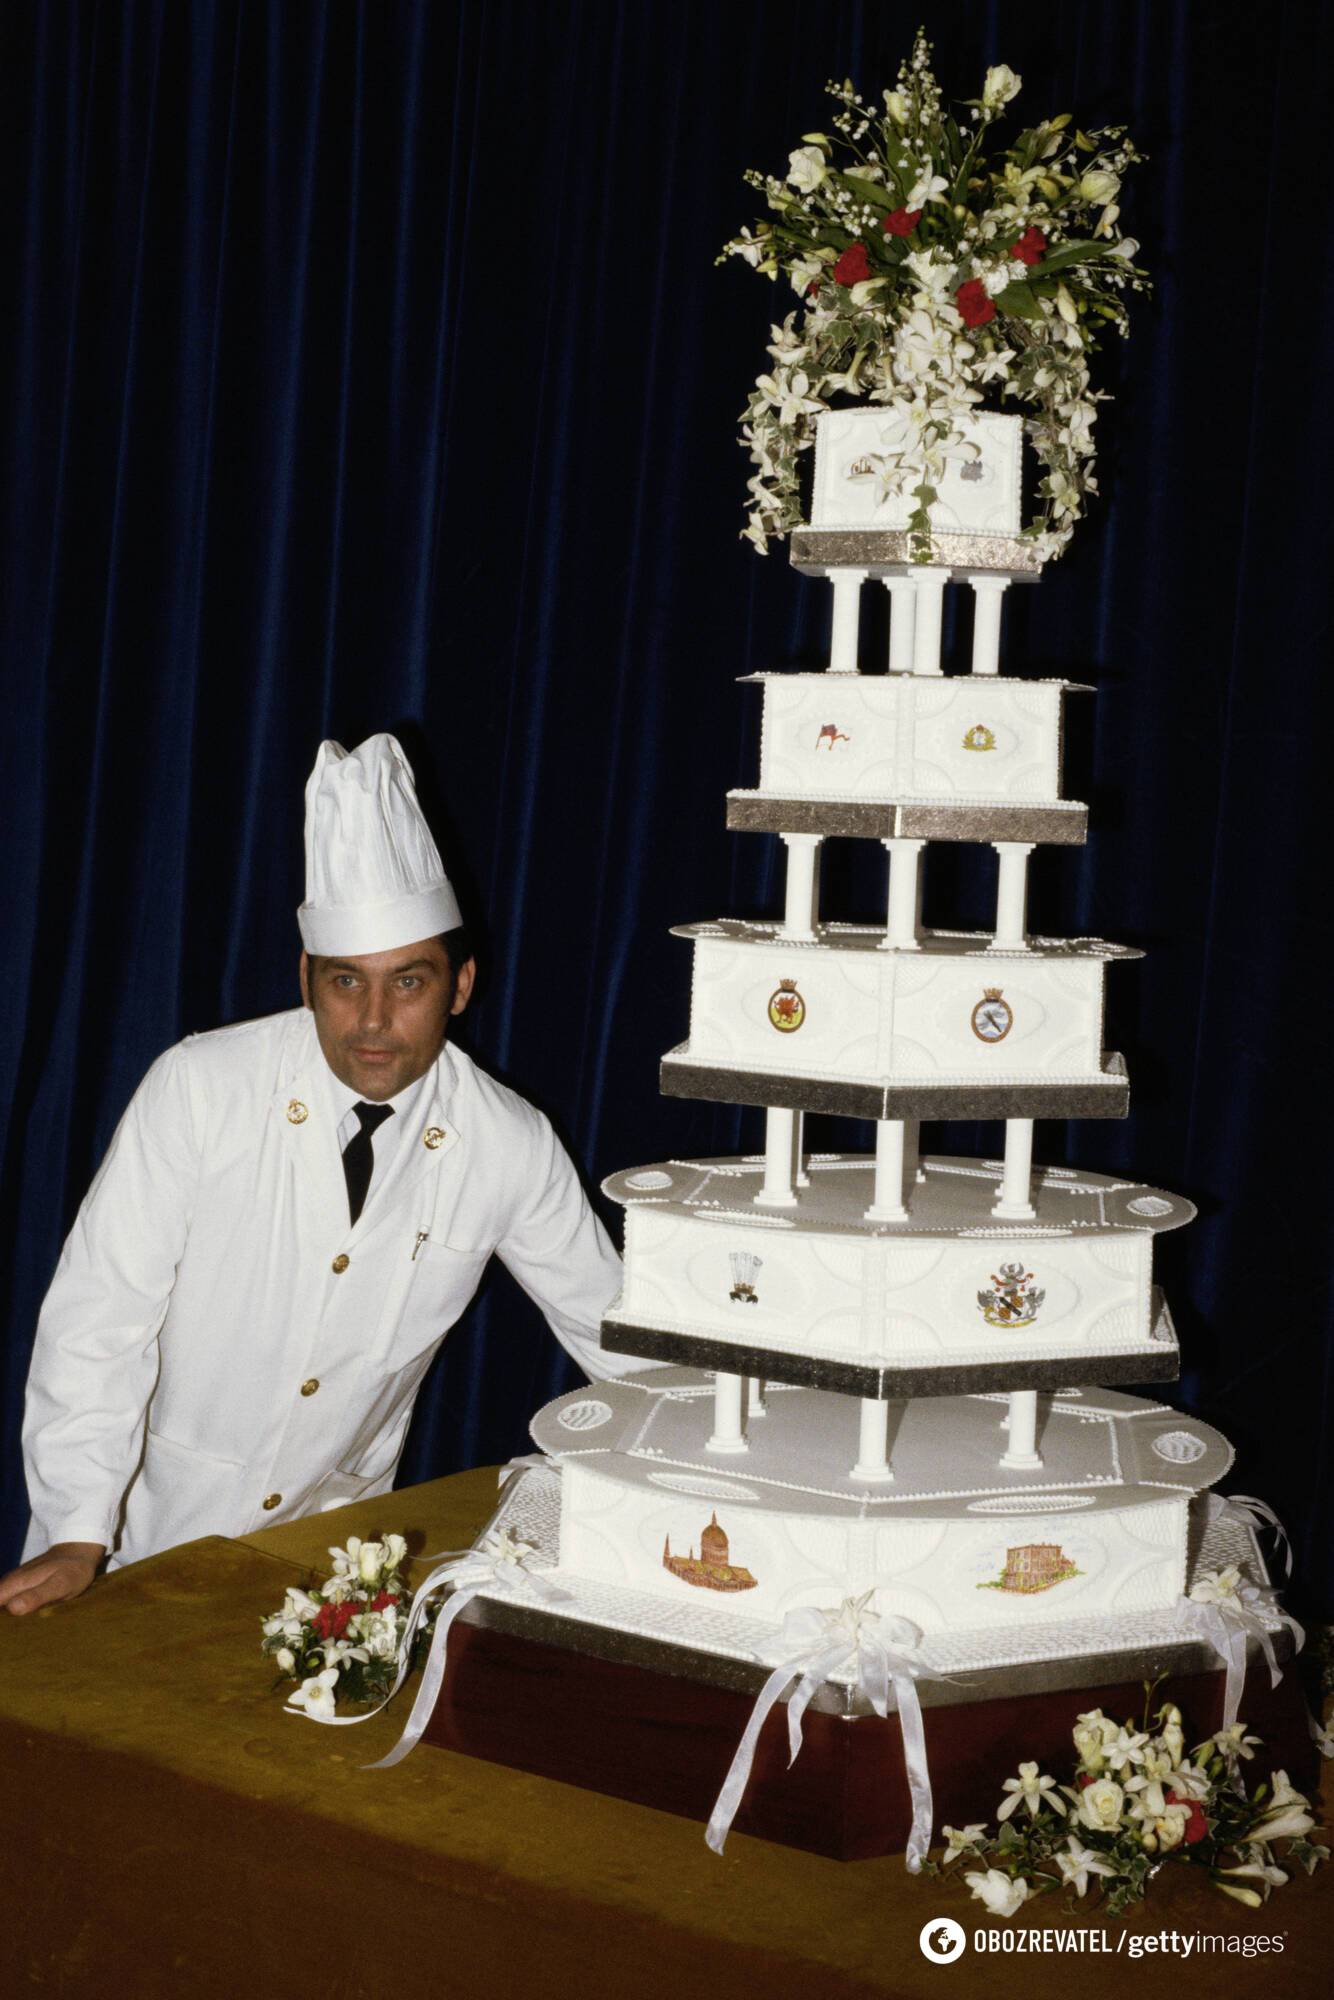 Дэвид Эйвери и его торт для свадьбы Дианы и Чарльза